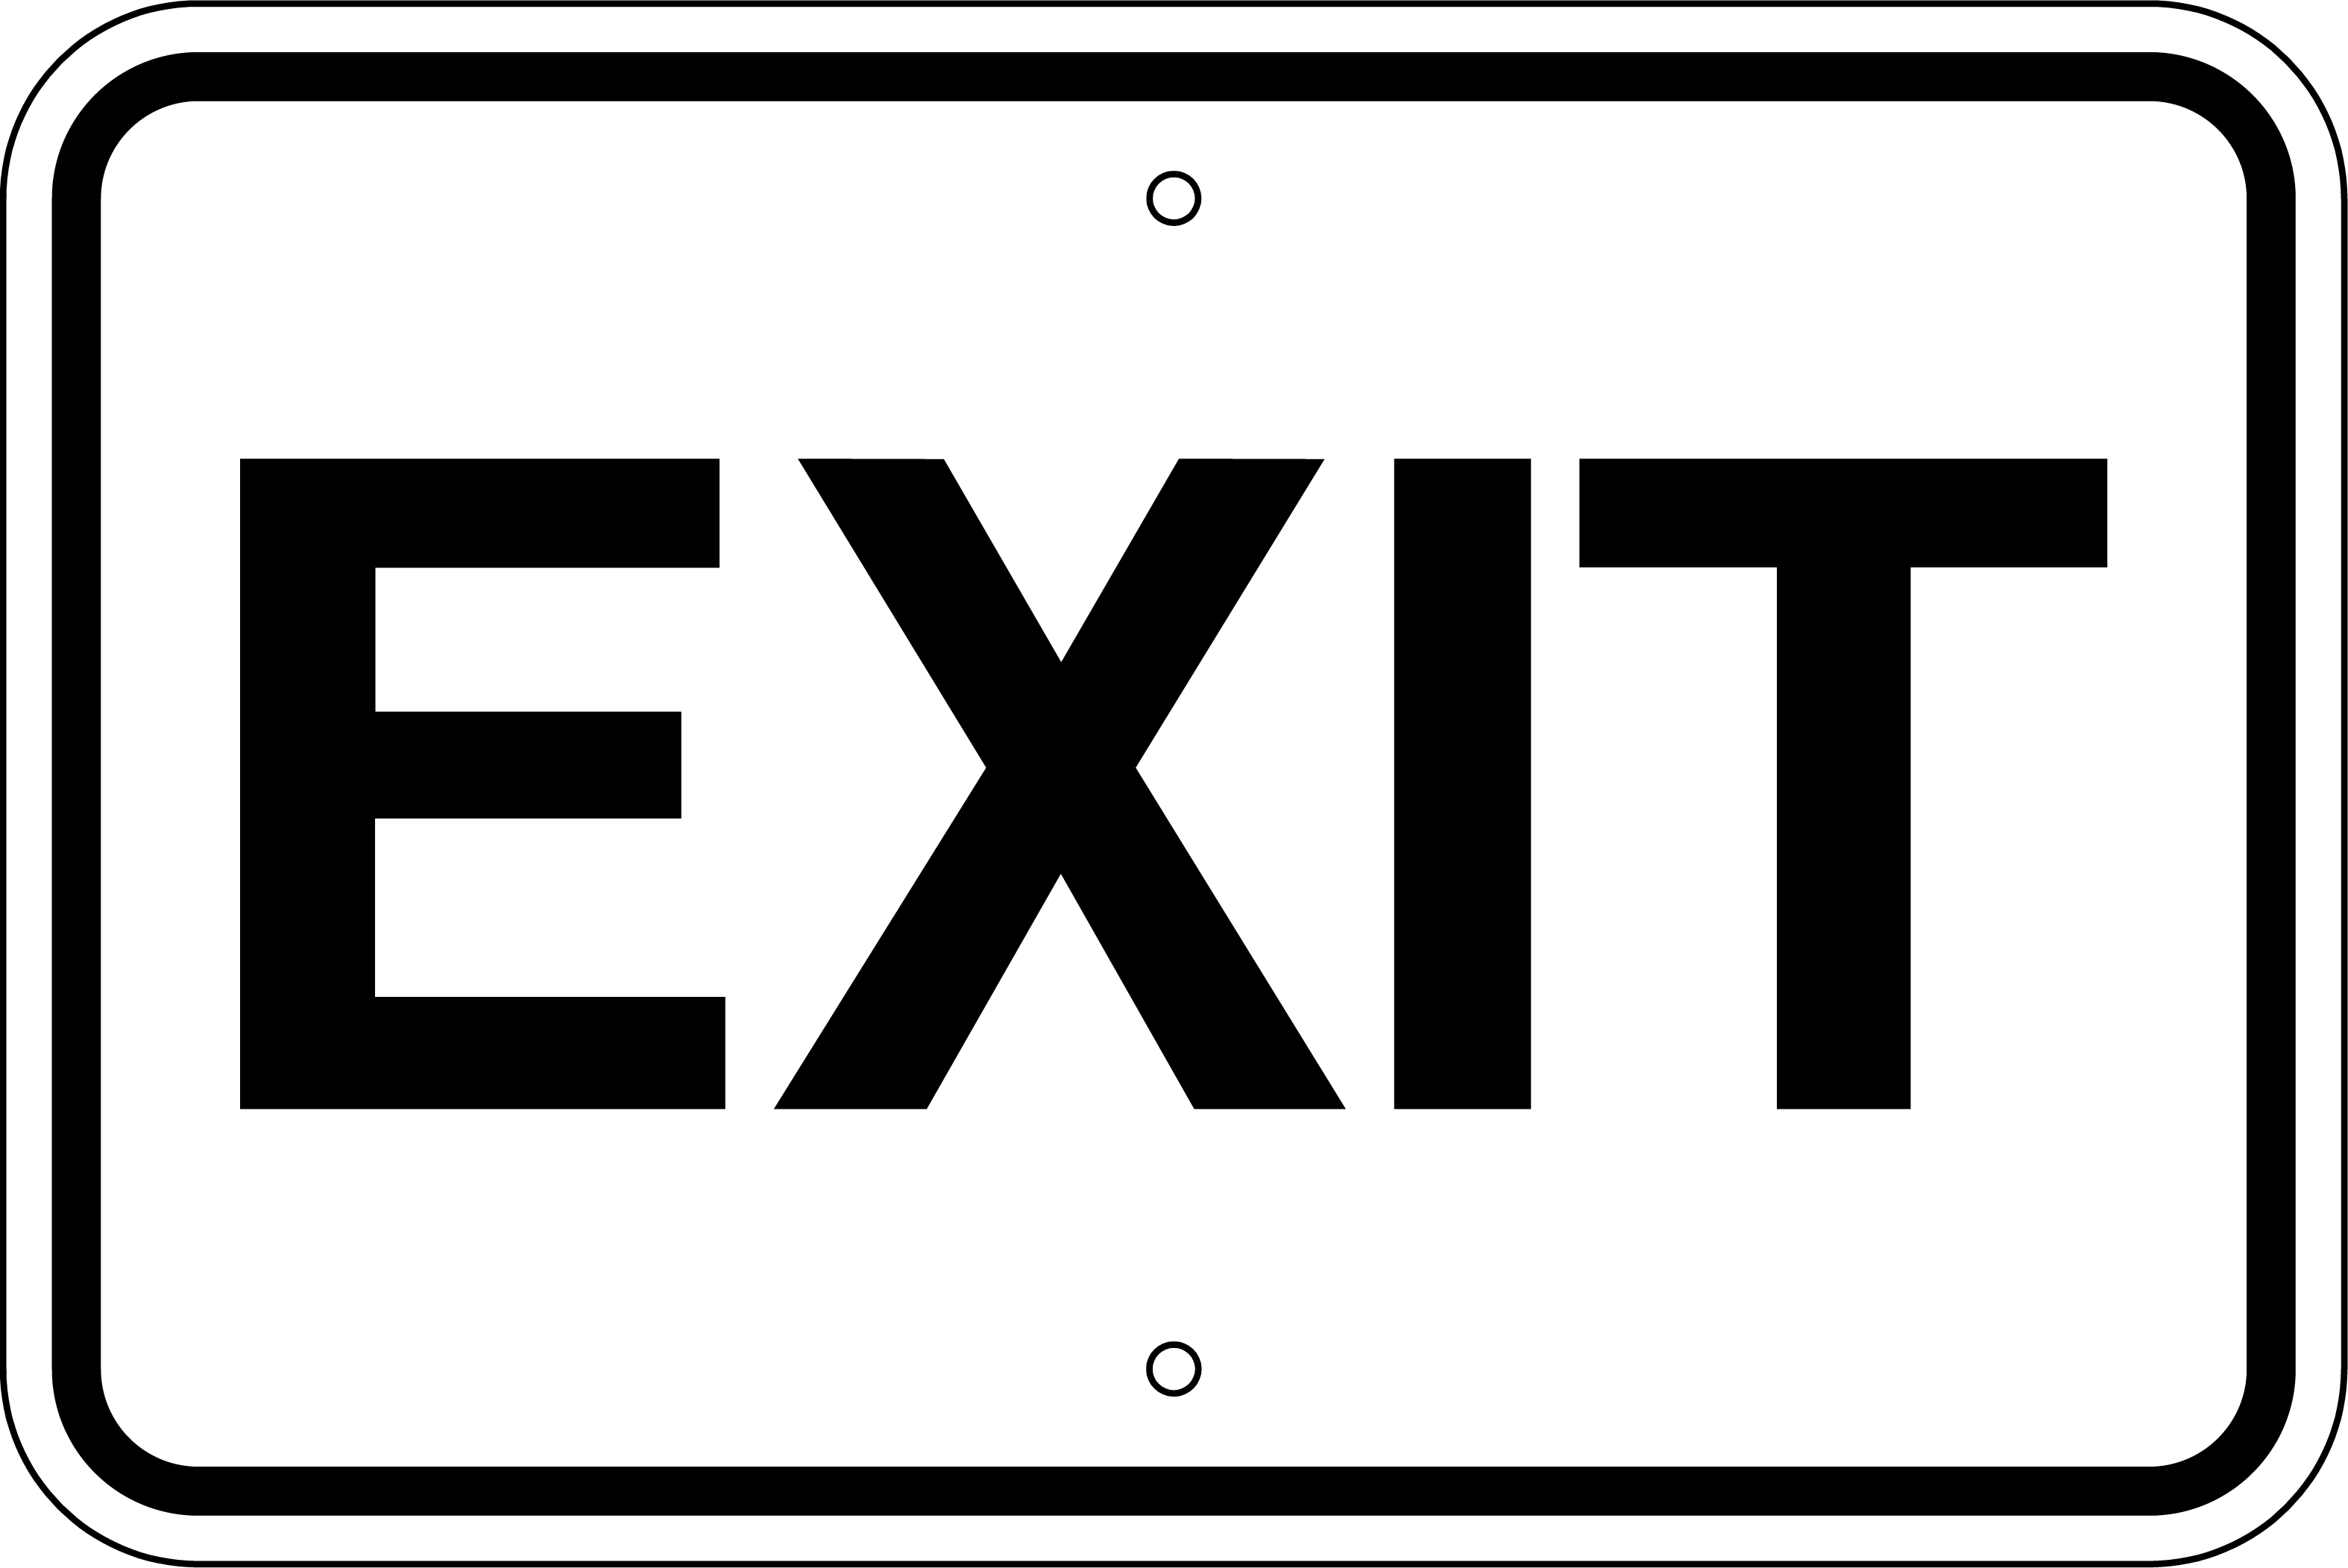 圖片:sign for exit | 精彩圖片搜